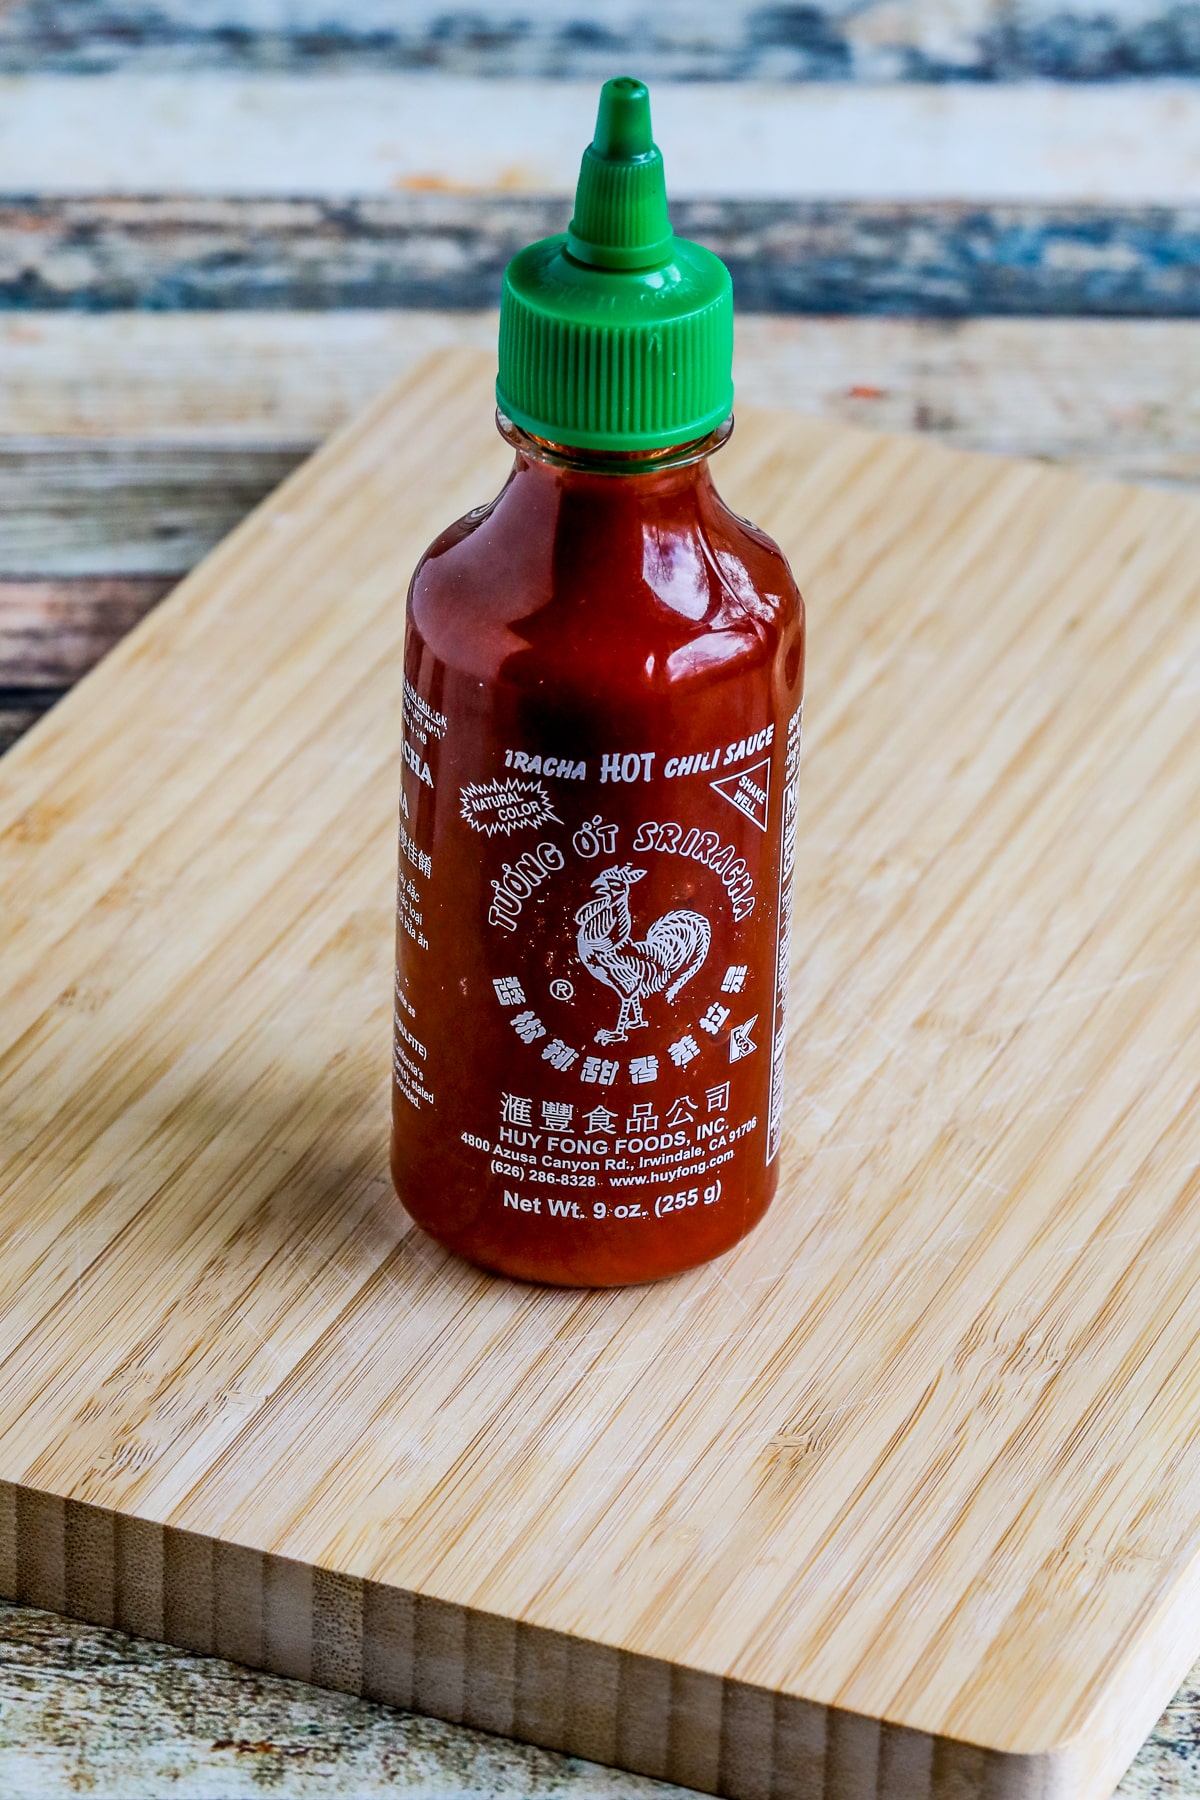 Sriracha Sauce bottle shown on cutting board.